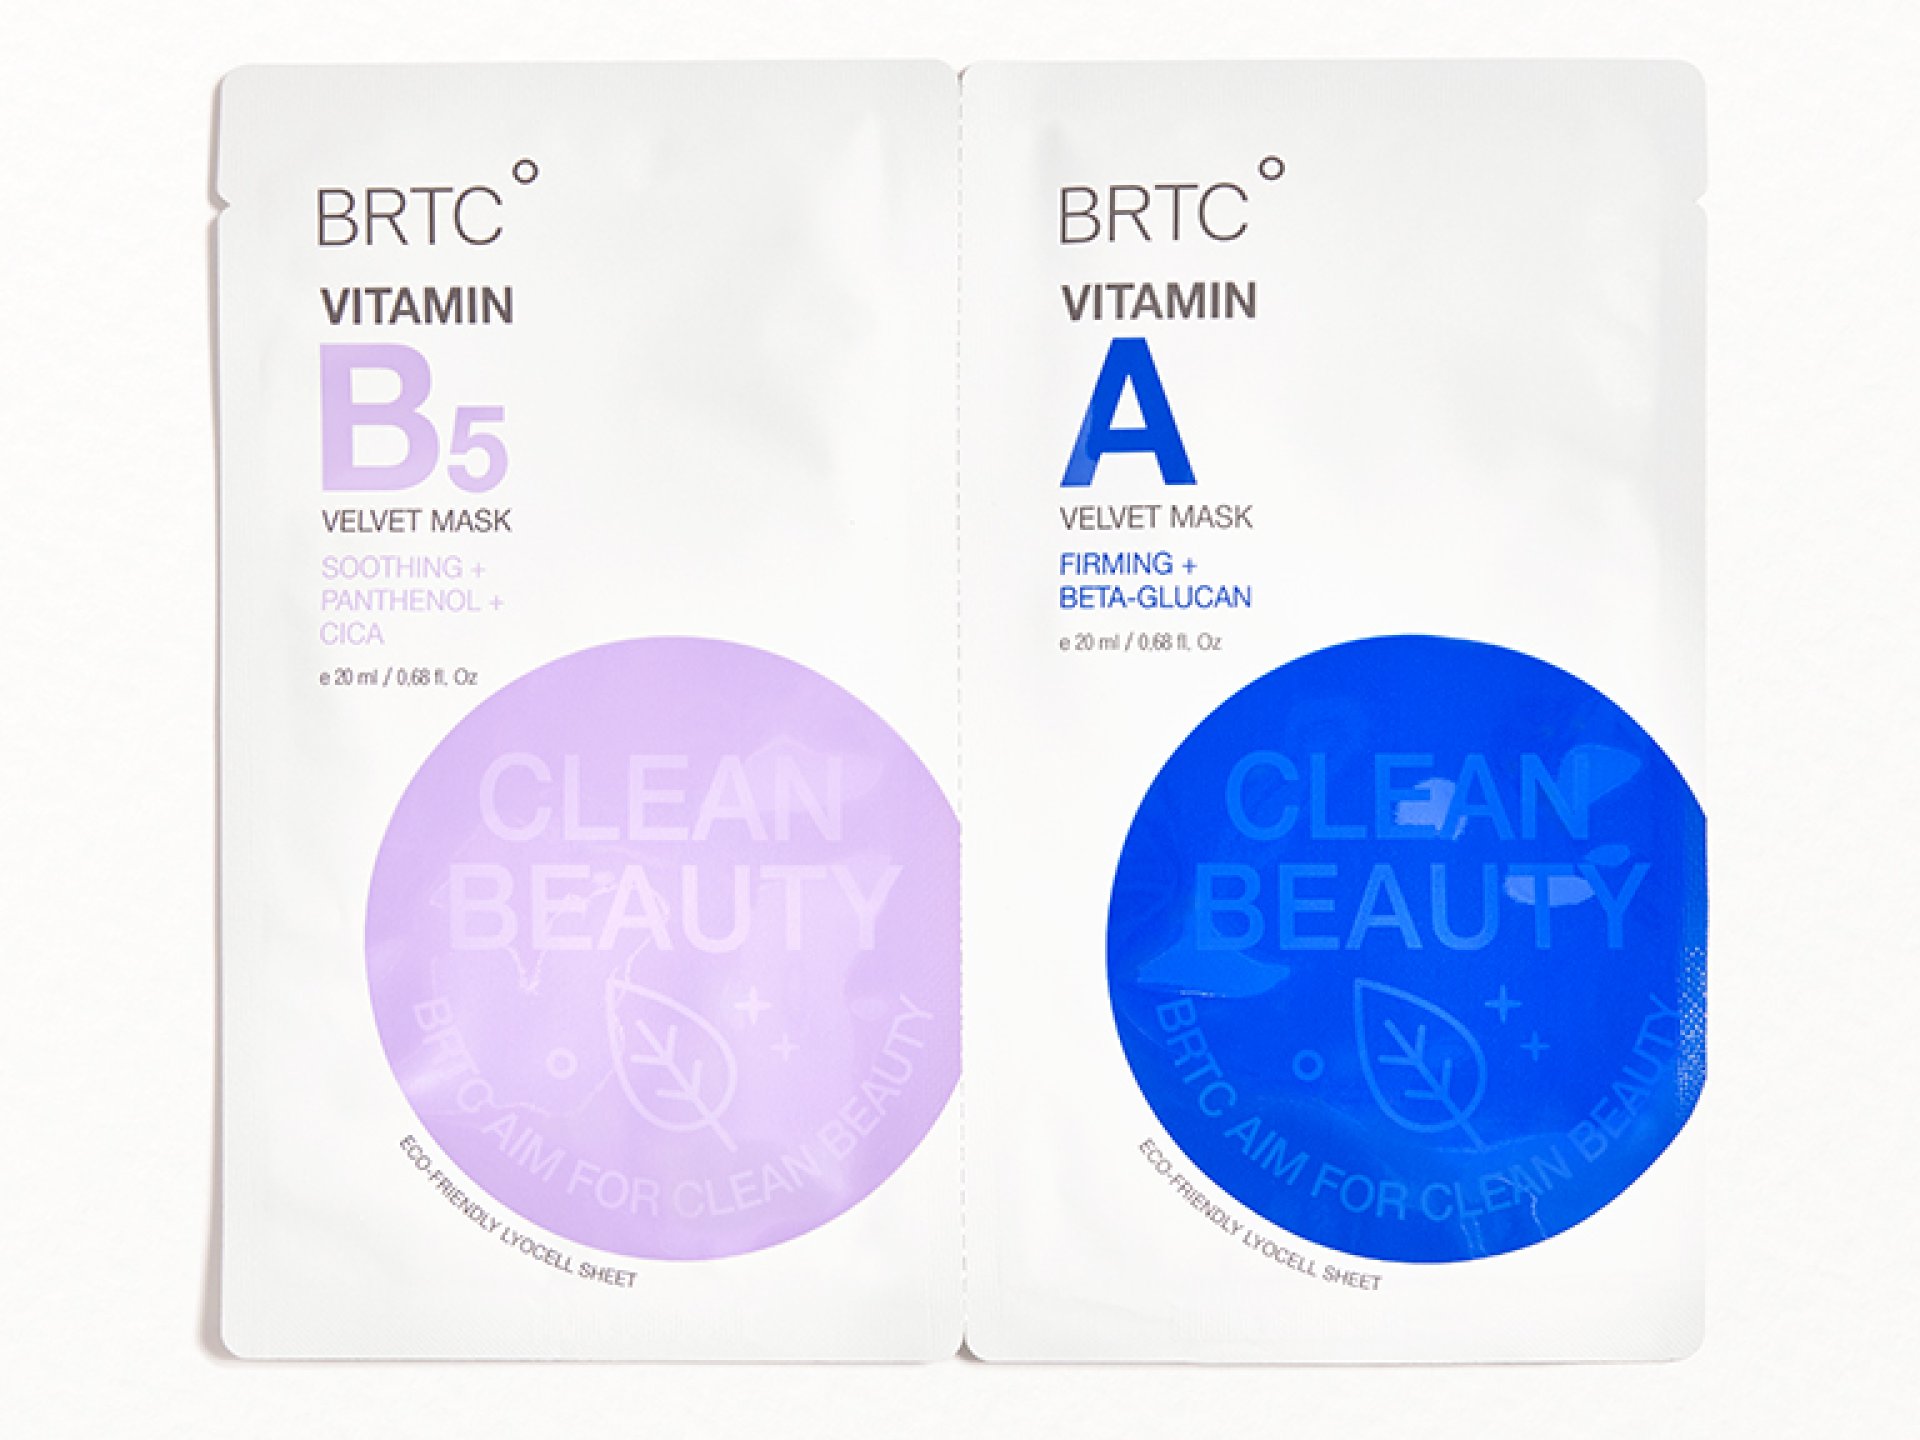 BRTC Vitamin B5 Velvet Mask & Vitamin A Velvet Mask Duo